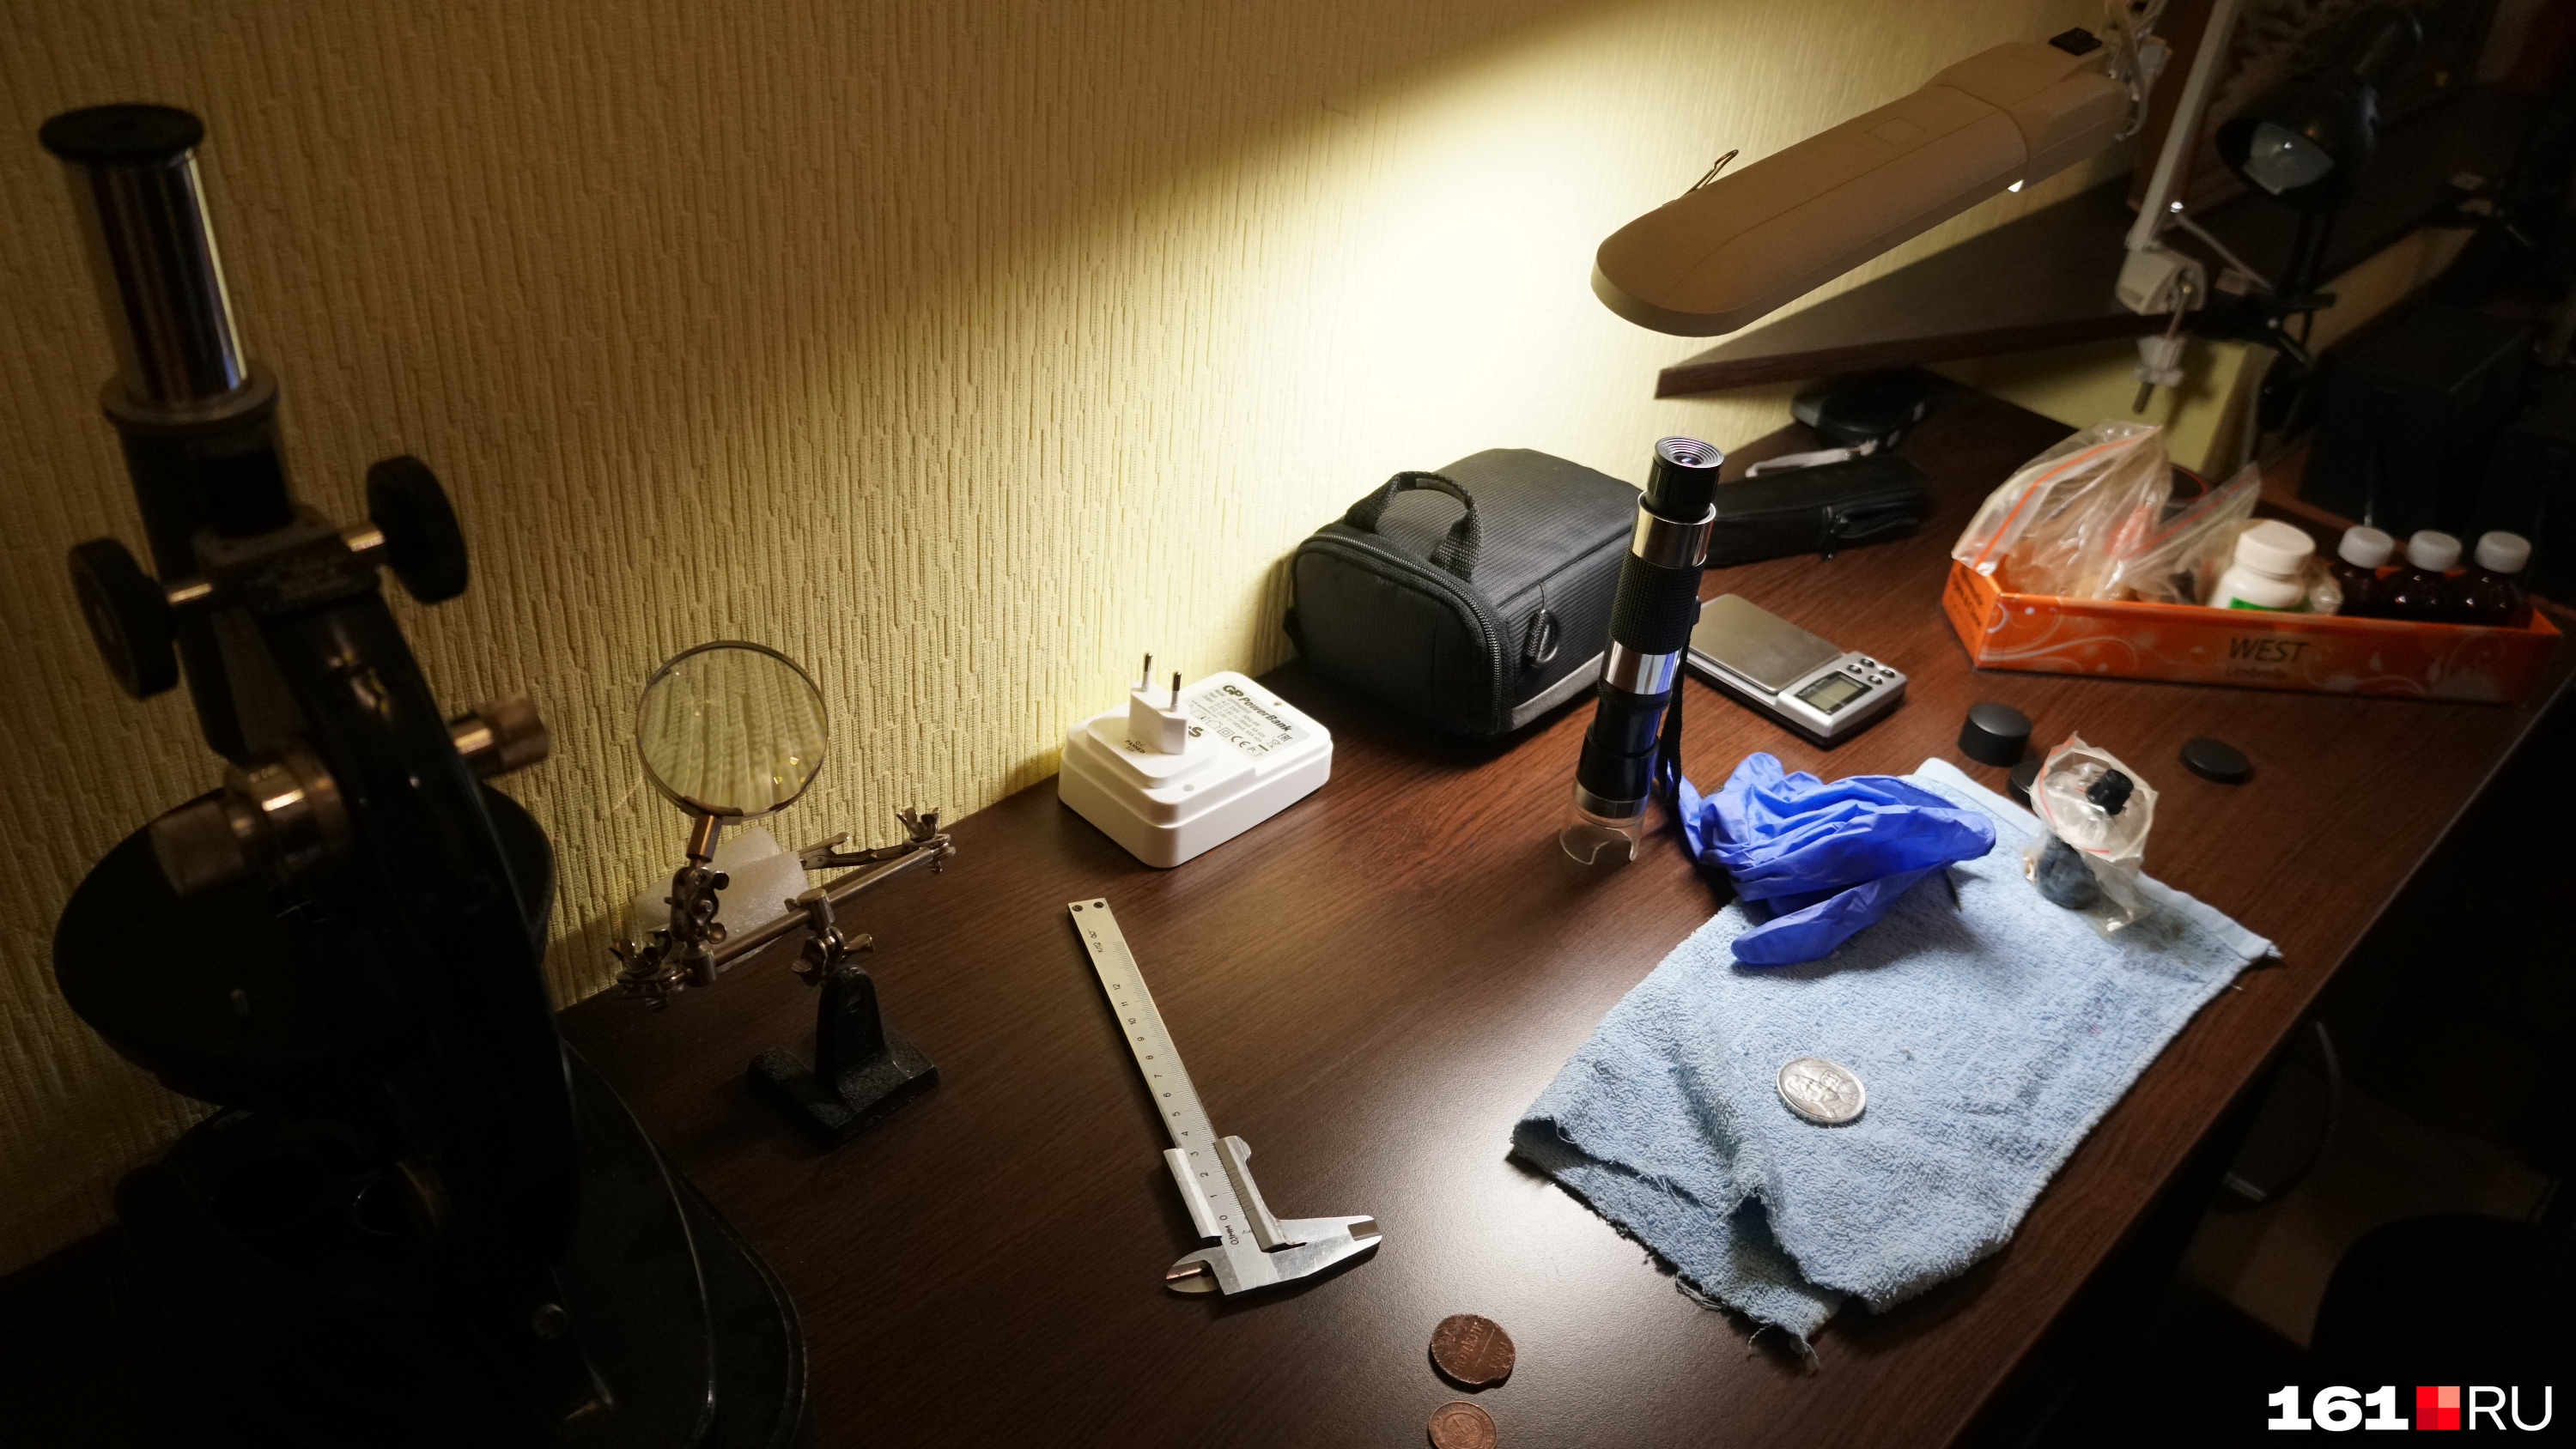 Рабочий стол Дениса Погорелова: микроскопы, лупа, весы и реагенты